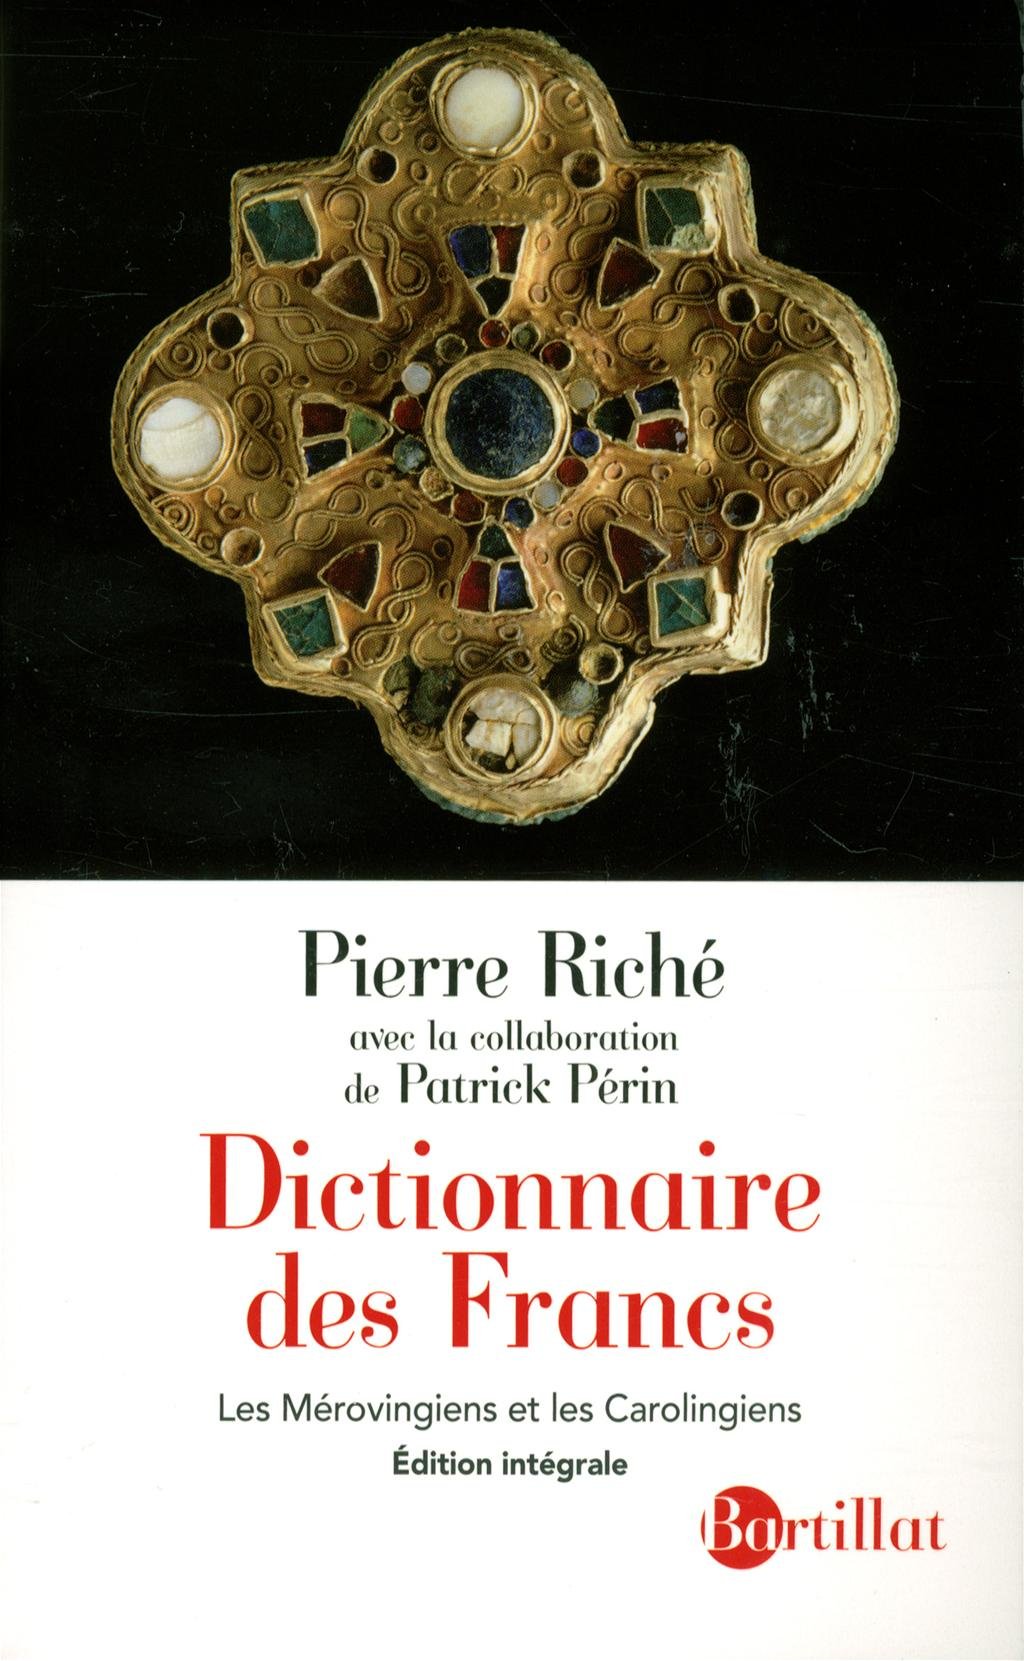 ÉPUISÉ - Dictionnaire des Francs. Les Mérovingiens et les Carolingiens, 2013, Edition intégrale, revue et augmentée, 575 p.